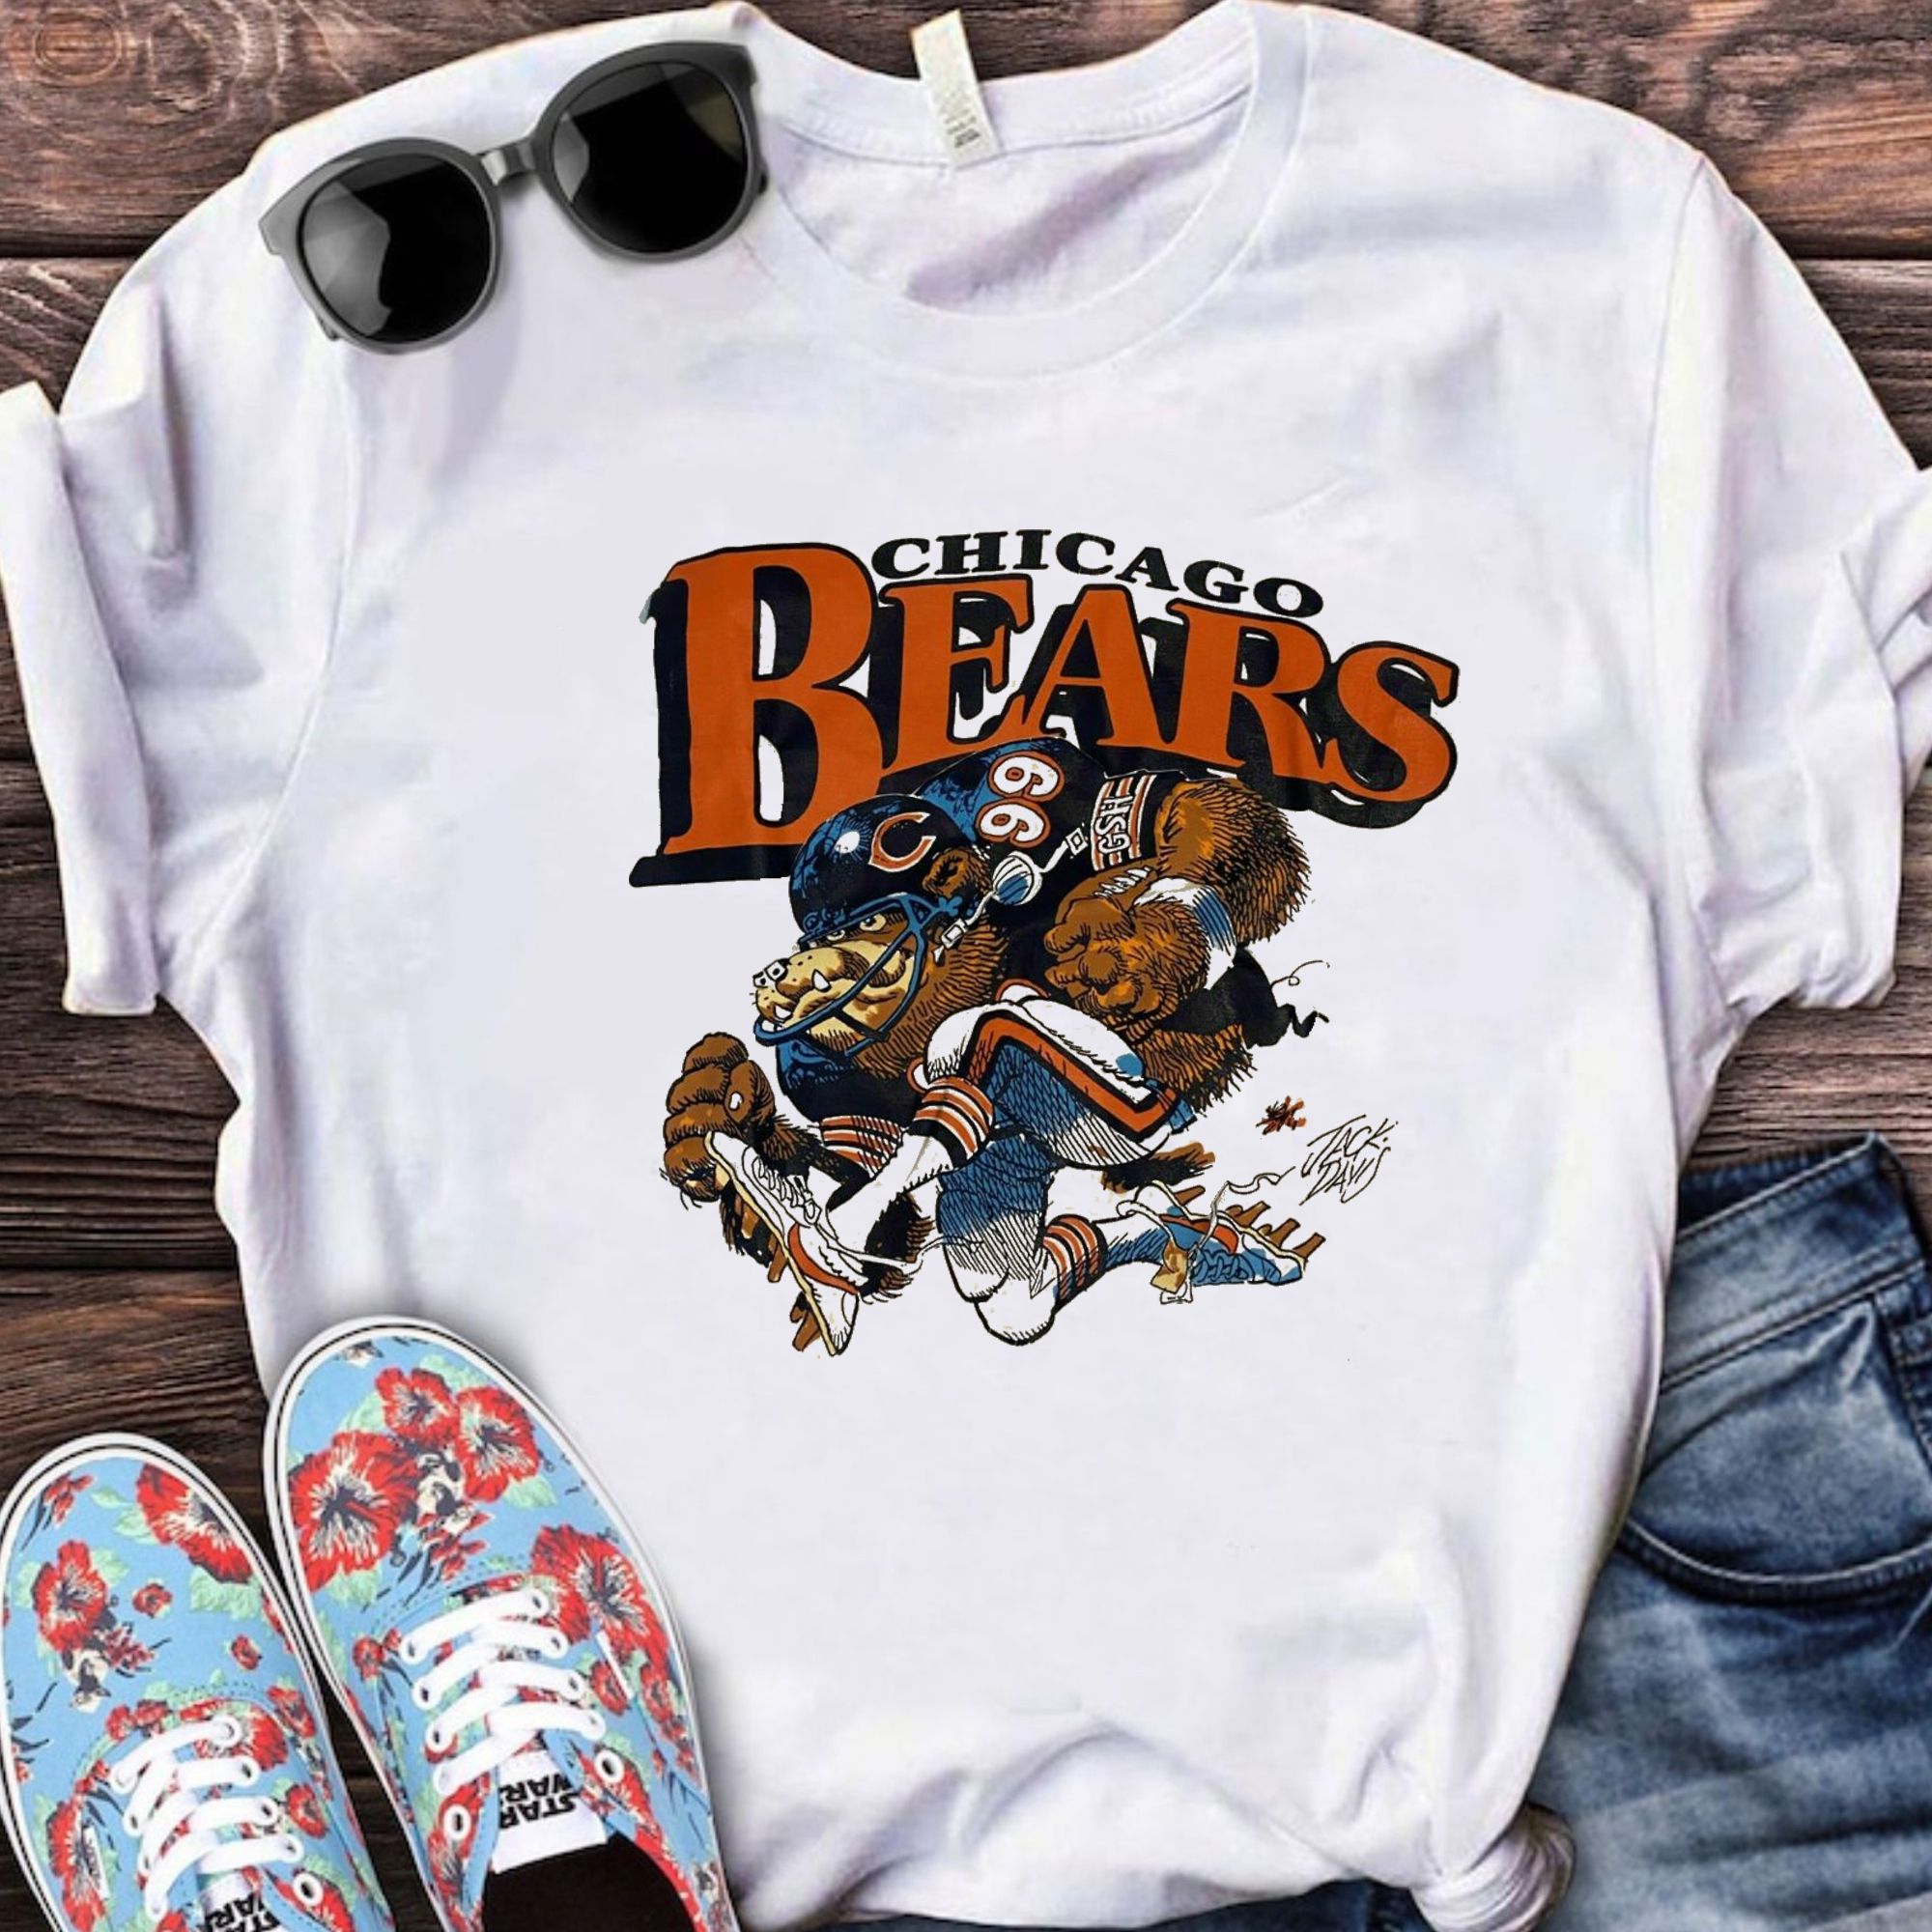 chicago bears jersey for men